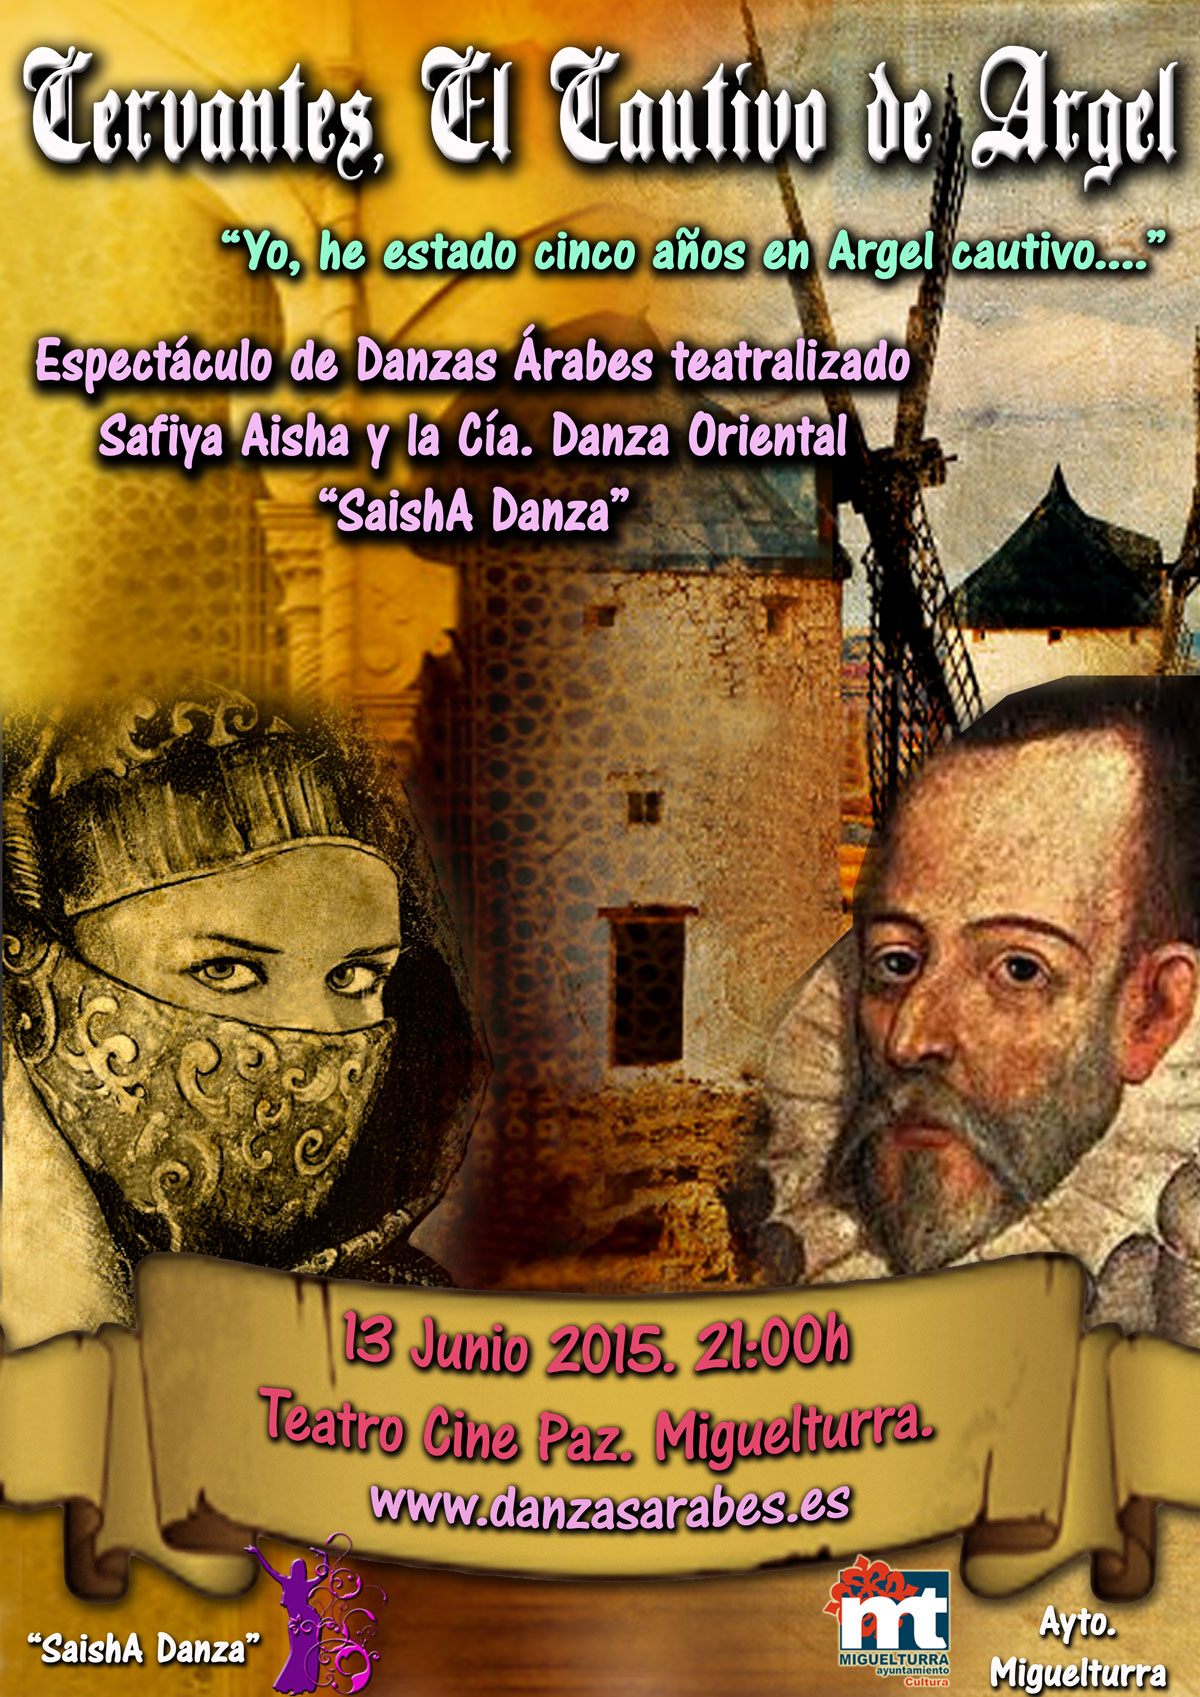 Teatro cervantino y de danzas árabes el sábado 13 de junio en el Teatro Cine Paz